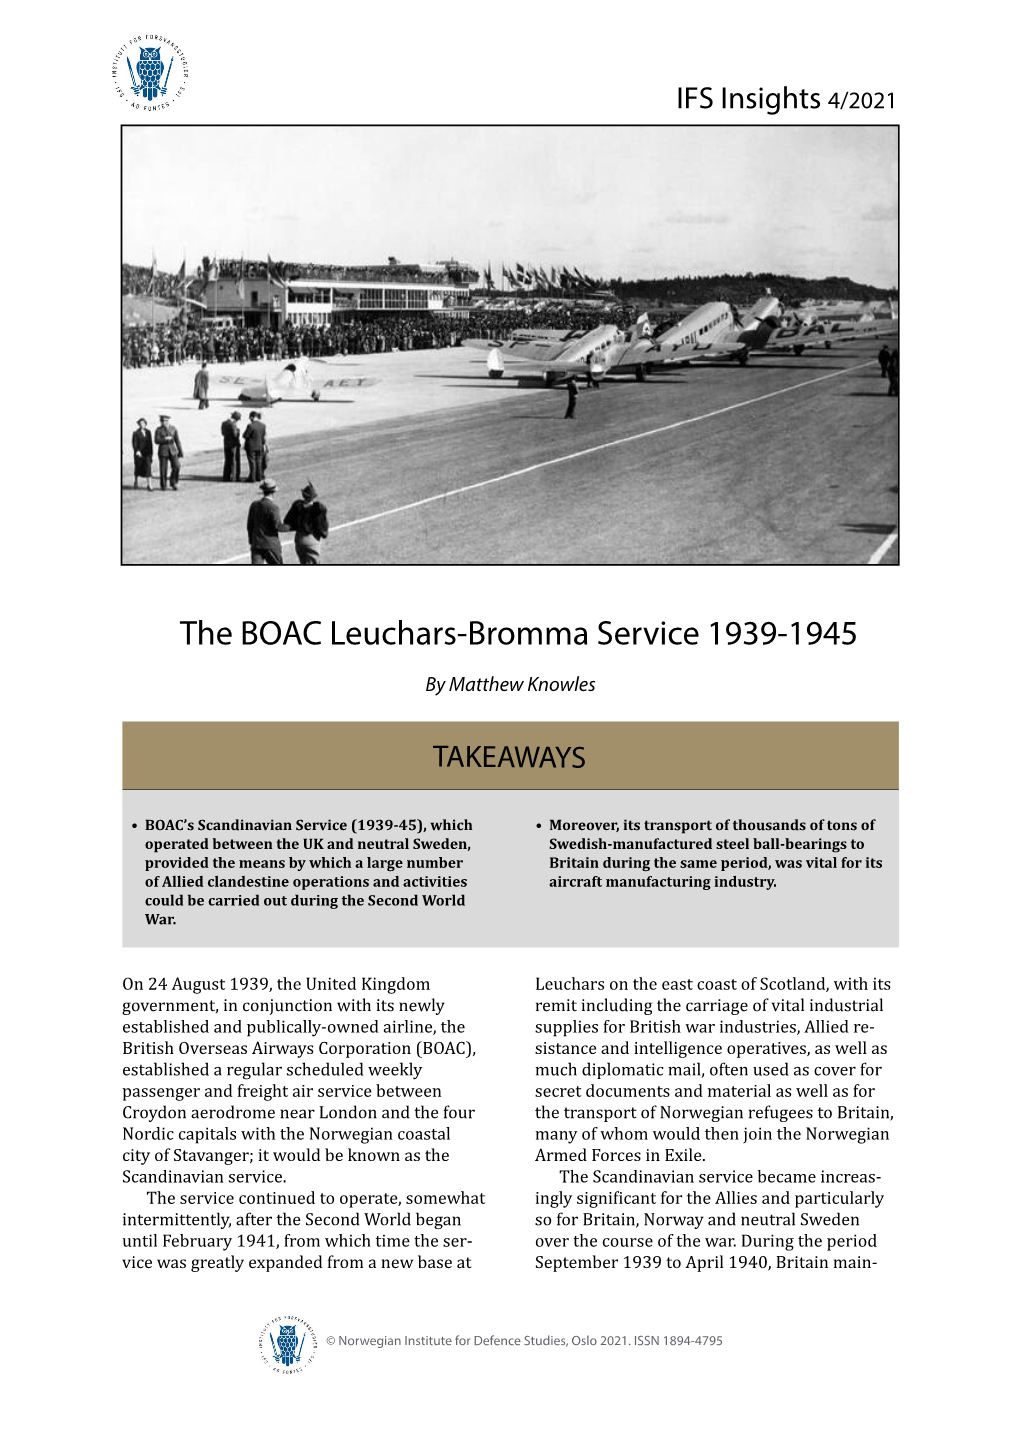 The BOAC Leuchars-Bromma Service 1939-1945